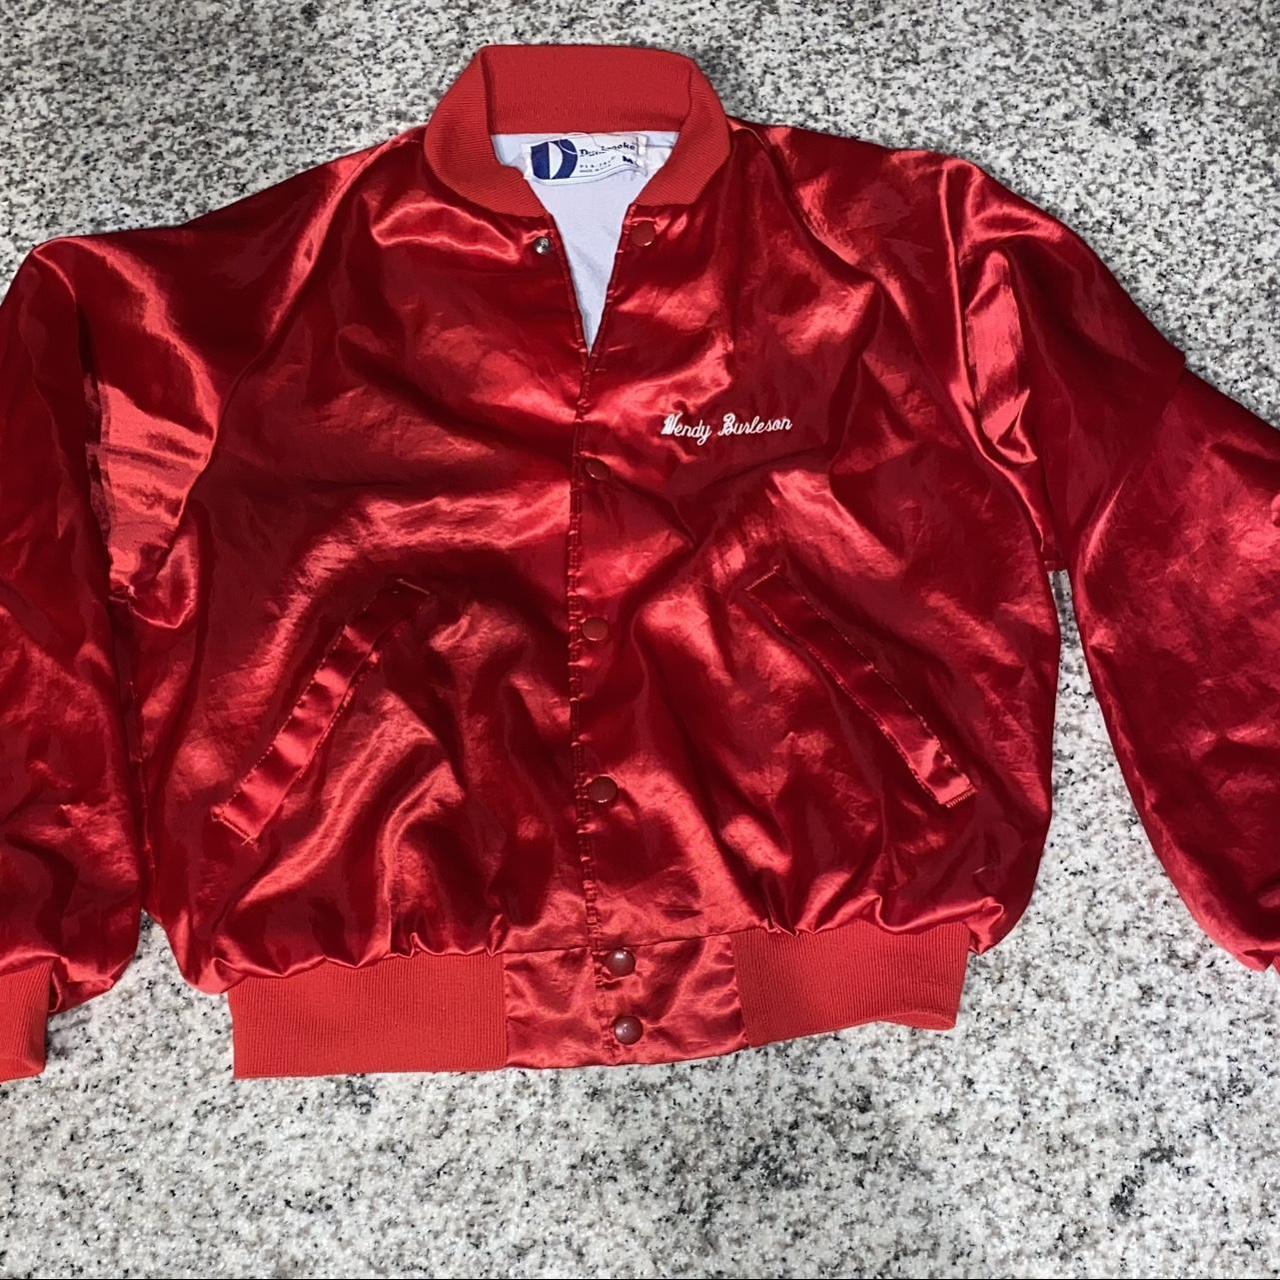 Vintage 1990s red bomber jacket #vintagefashion... - Depop